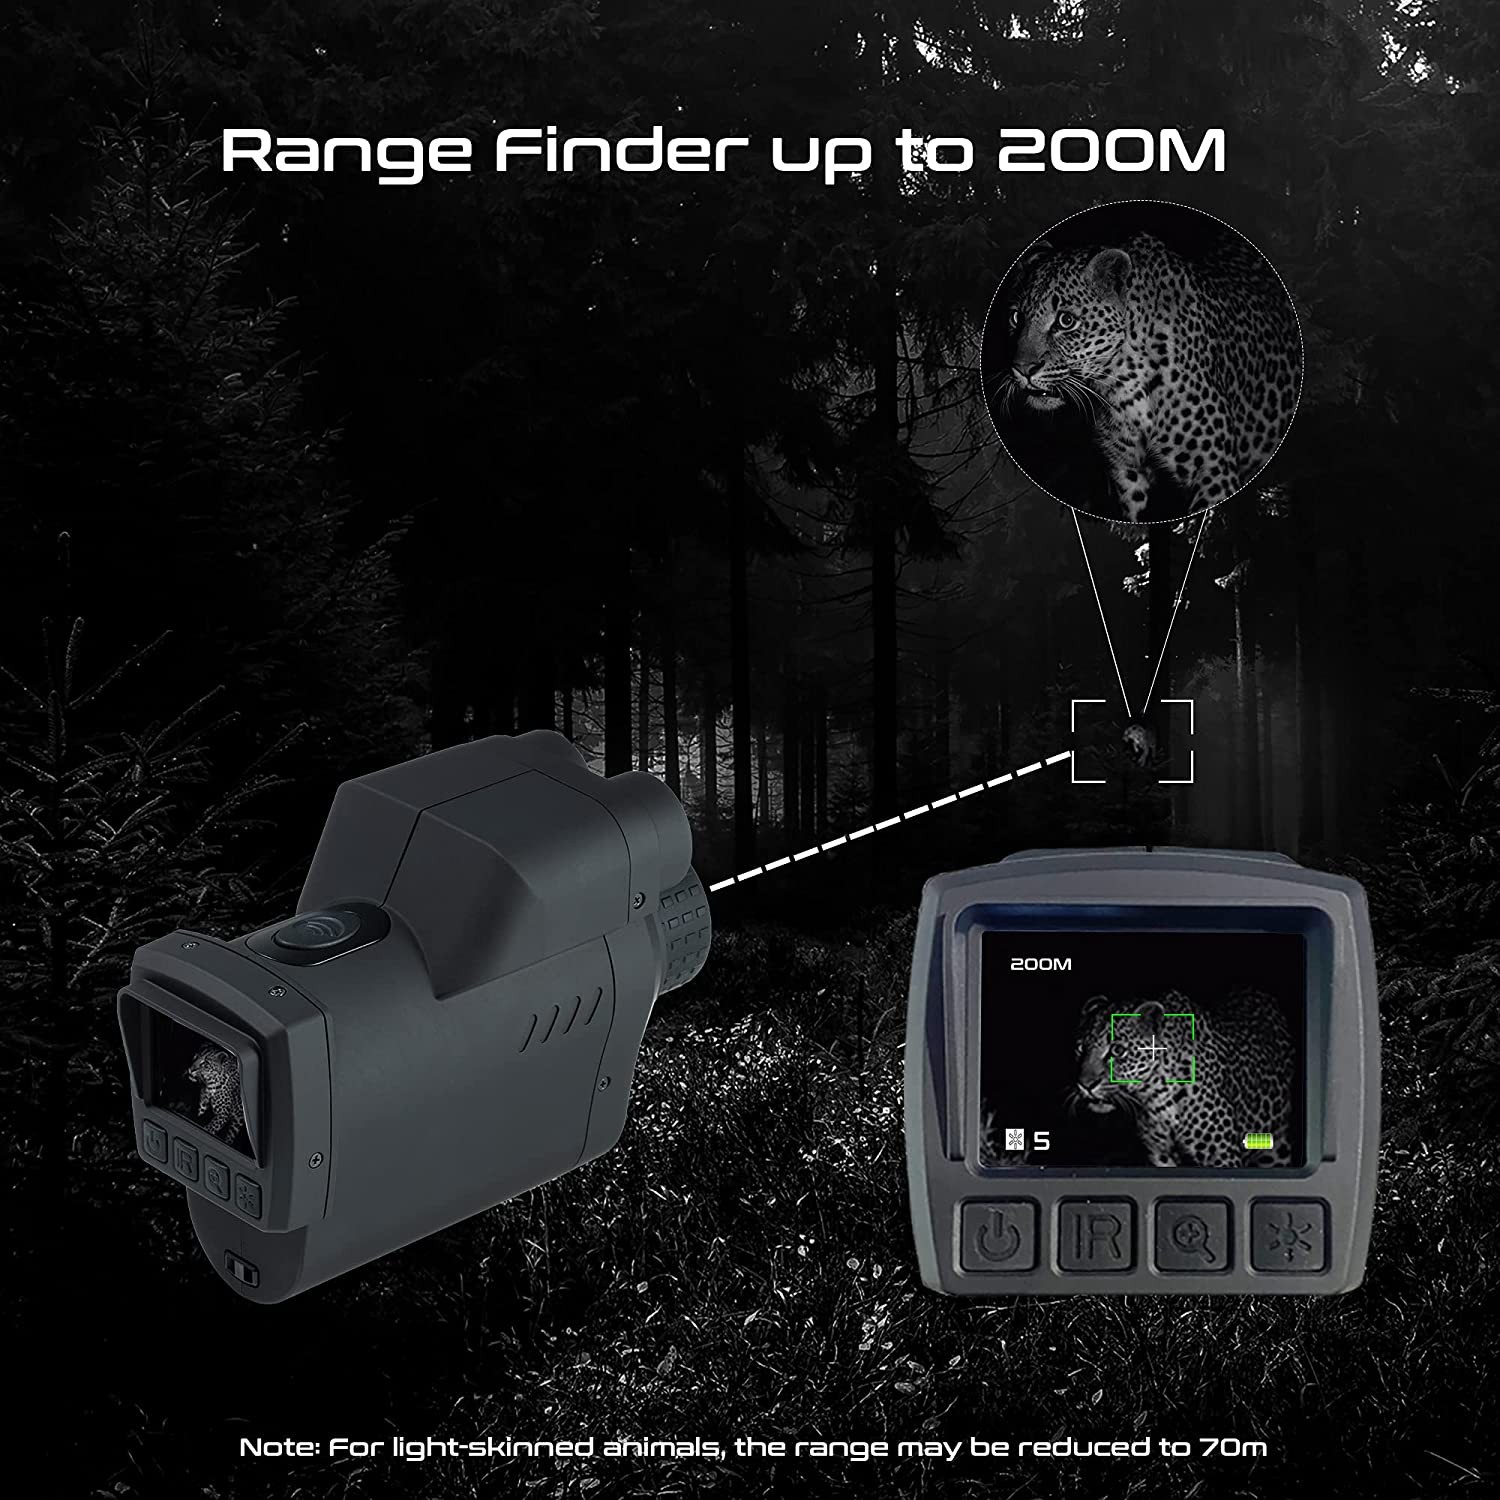 binoculars - distance range finder up to 200m